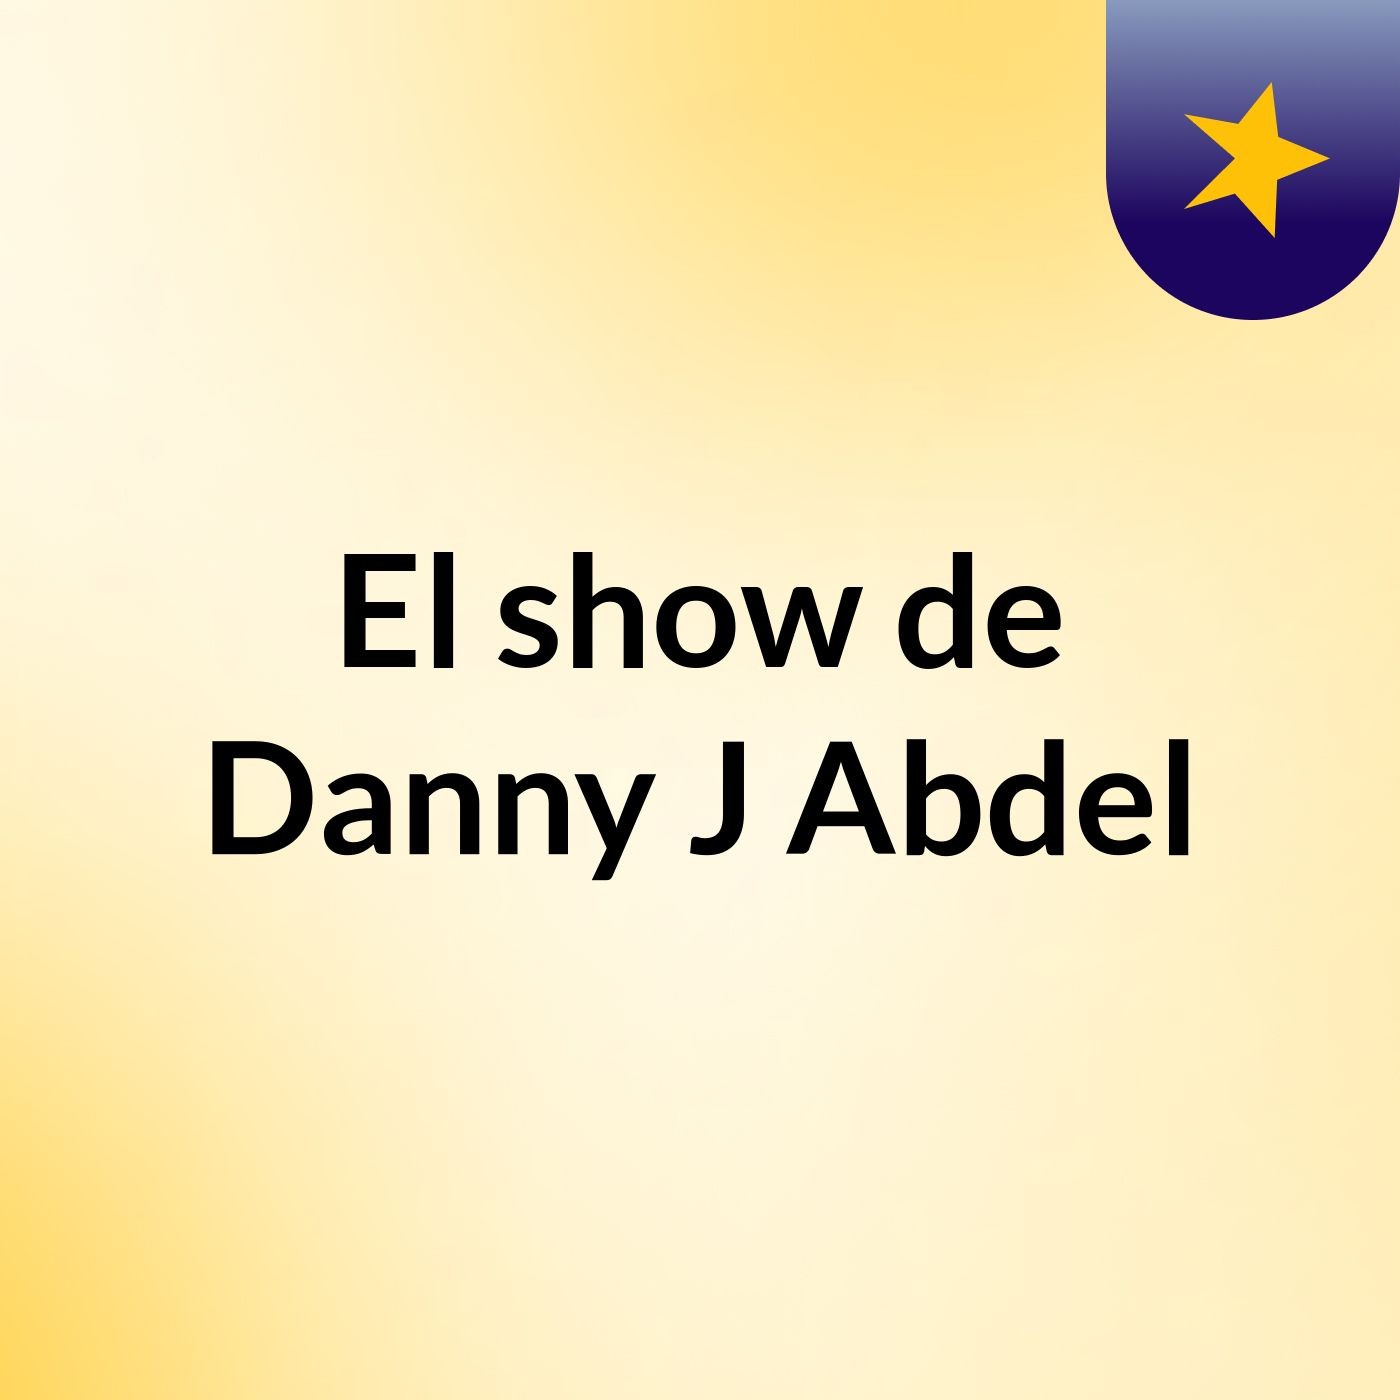 El show de Danny J Abdel